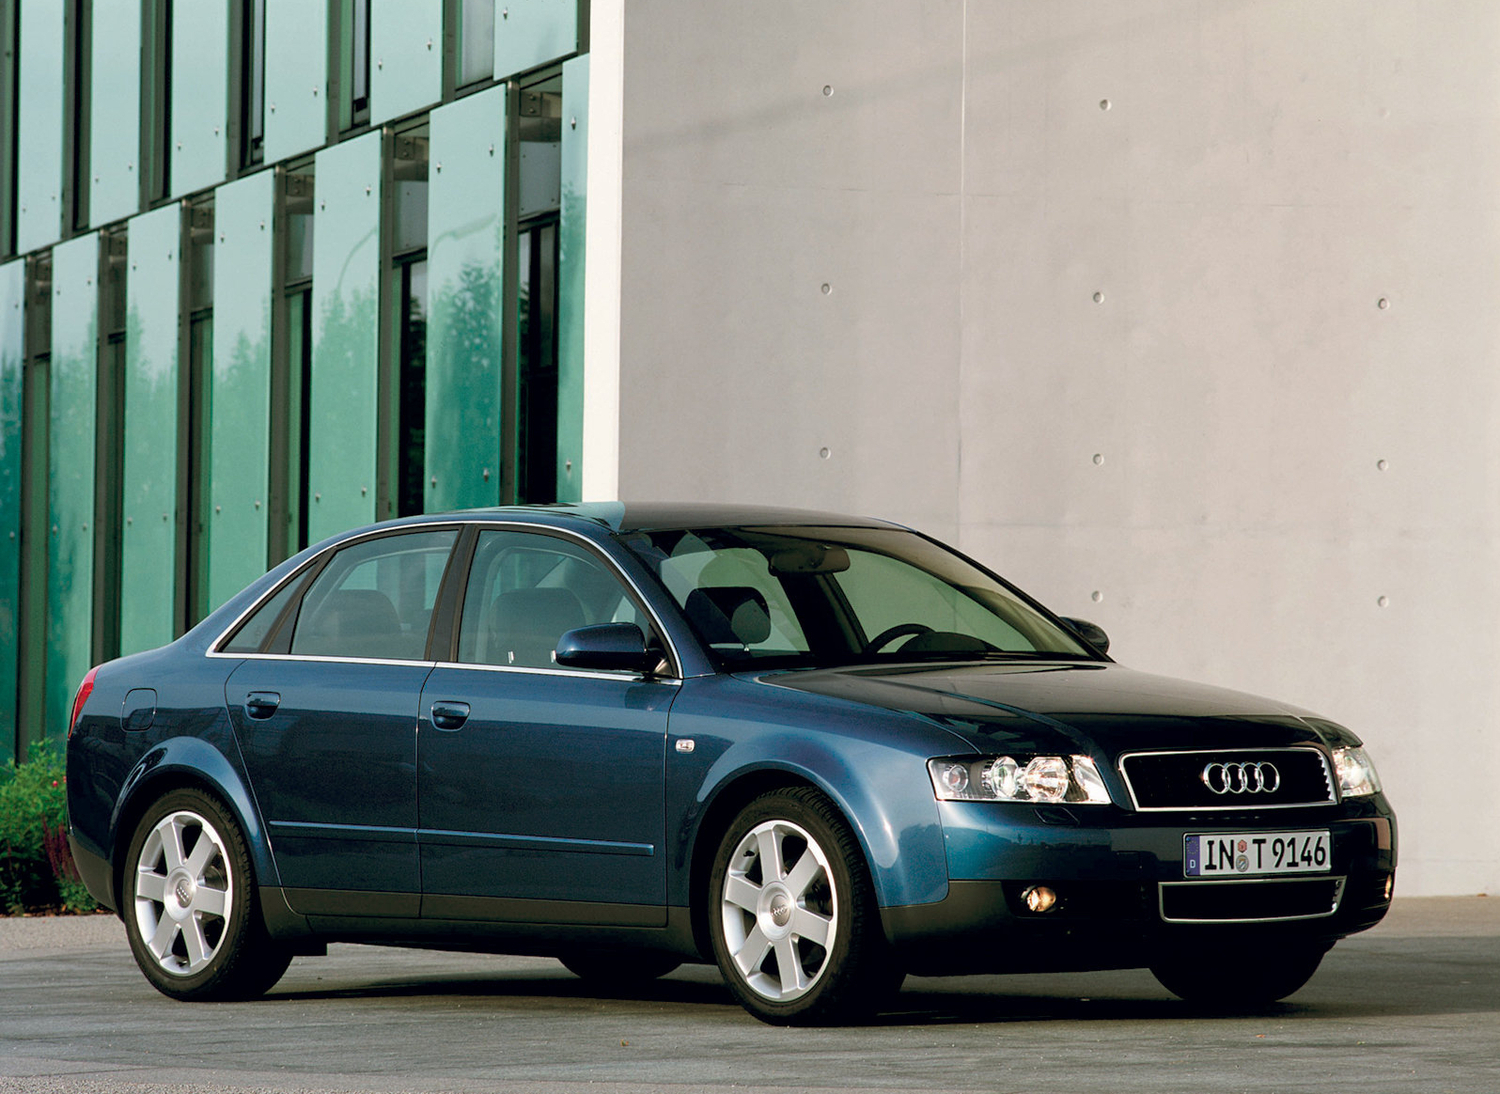 Ауди 4 2001 год. Audi a4 2002. Ауди а4 2002. Audi a4 b6 2002. Audi a4 2001.